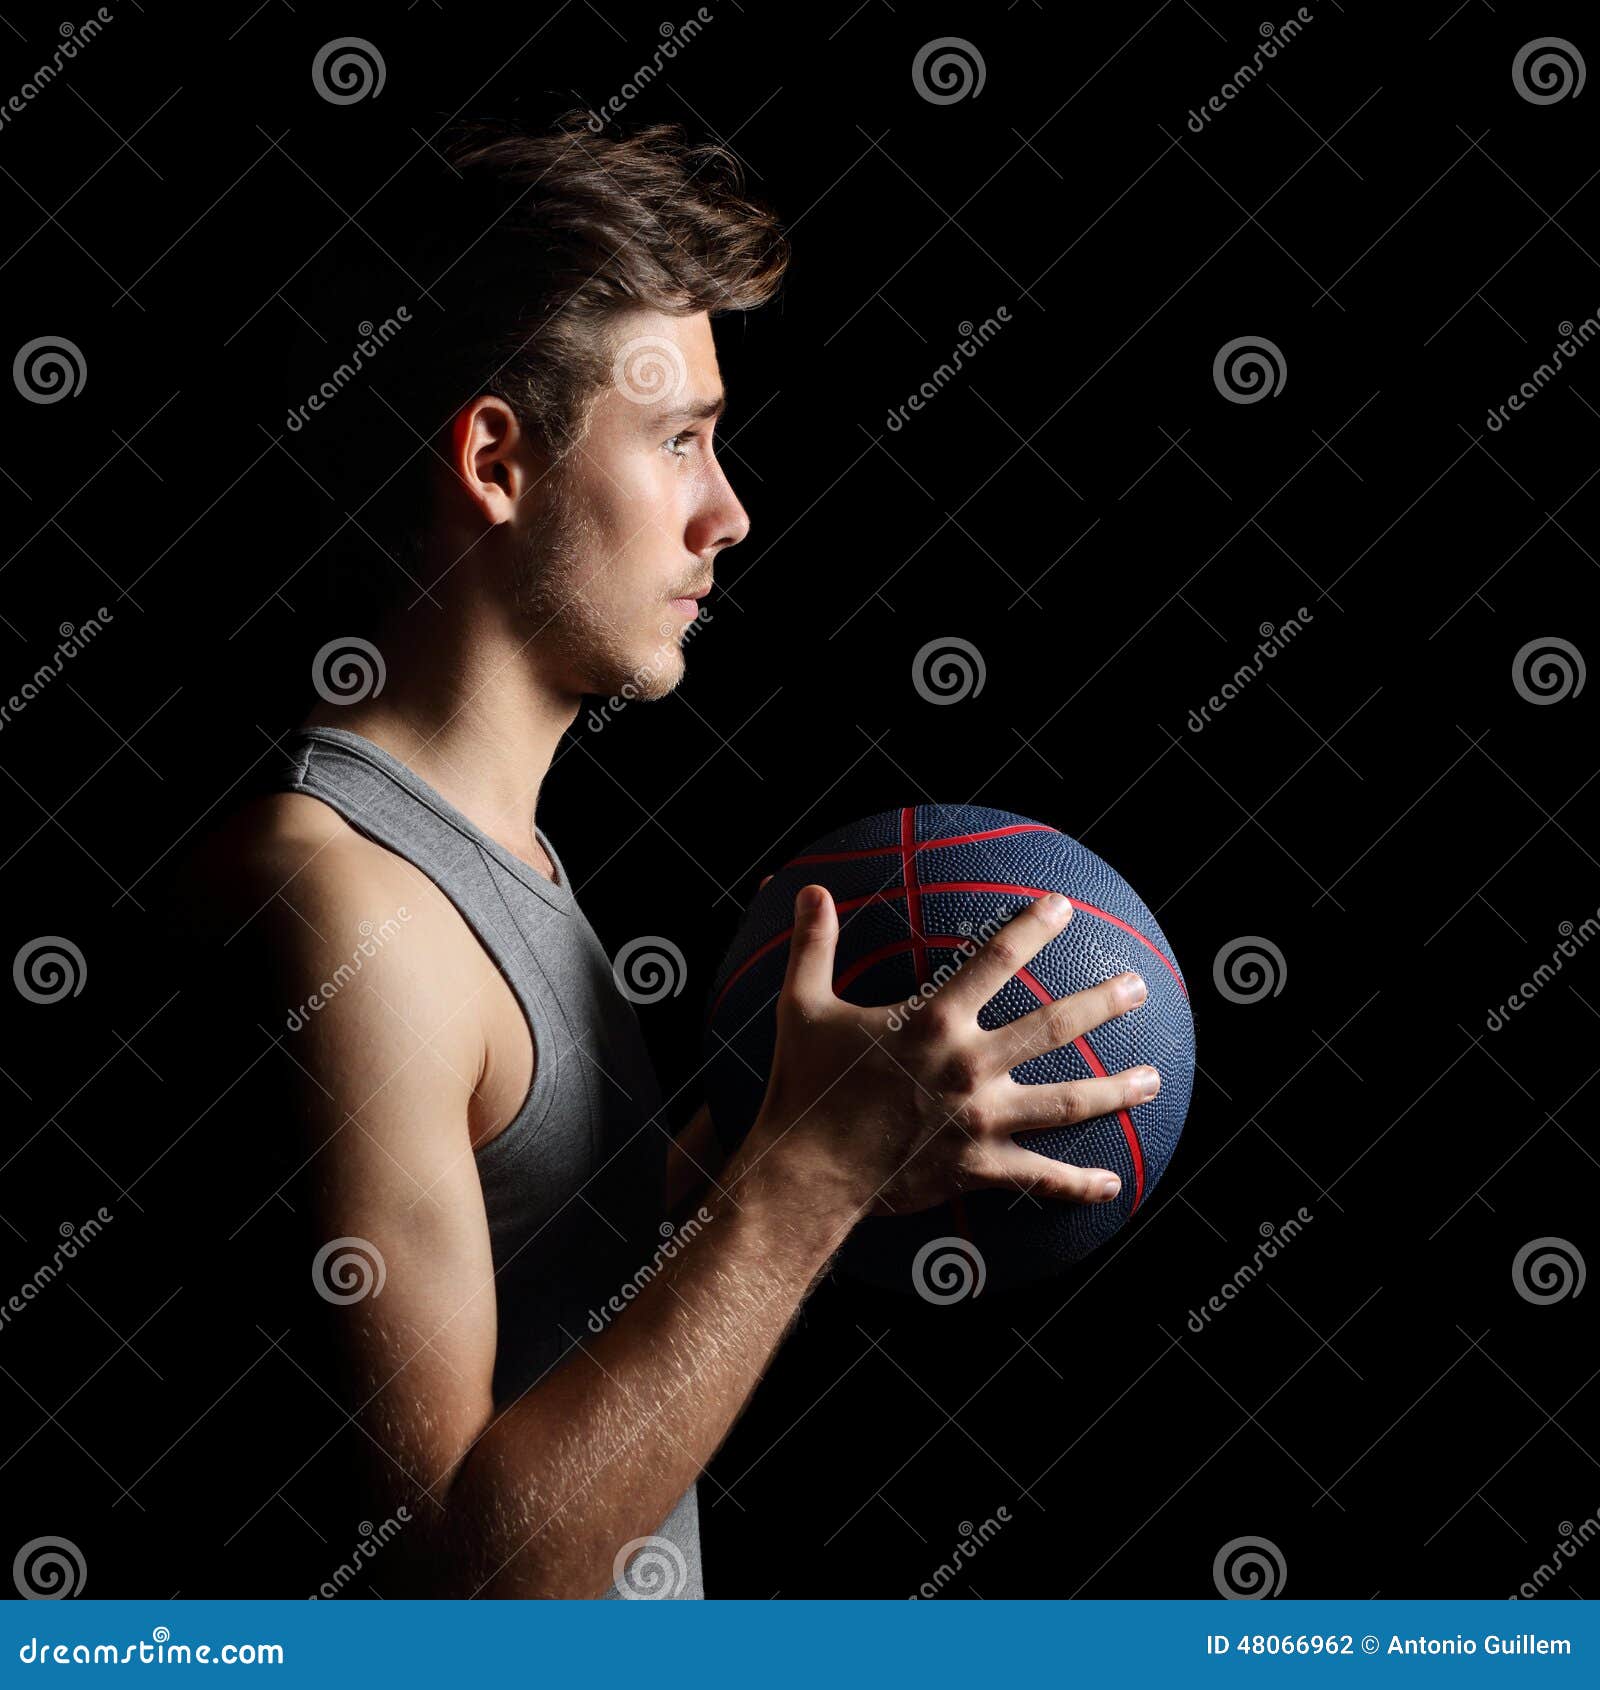 Баскетболист держит мяч. Держит мяч на шее. Фото баскетболистов с мячом в руках. Баскетболист держит в руках телефон.